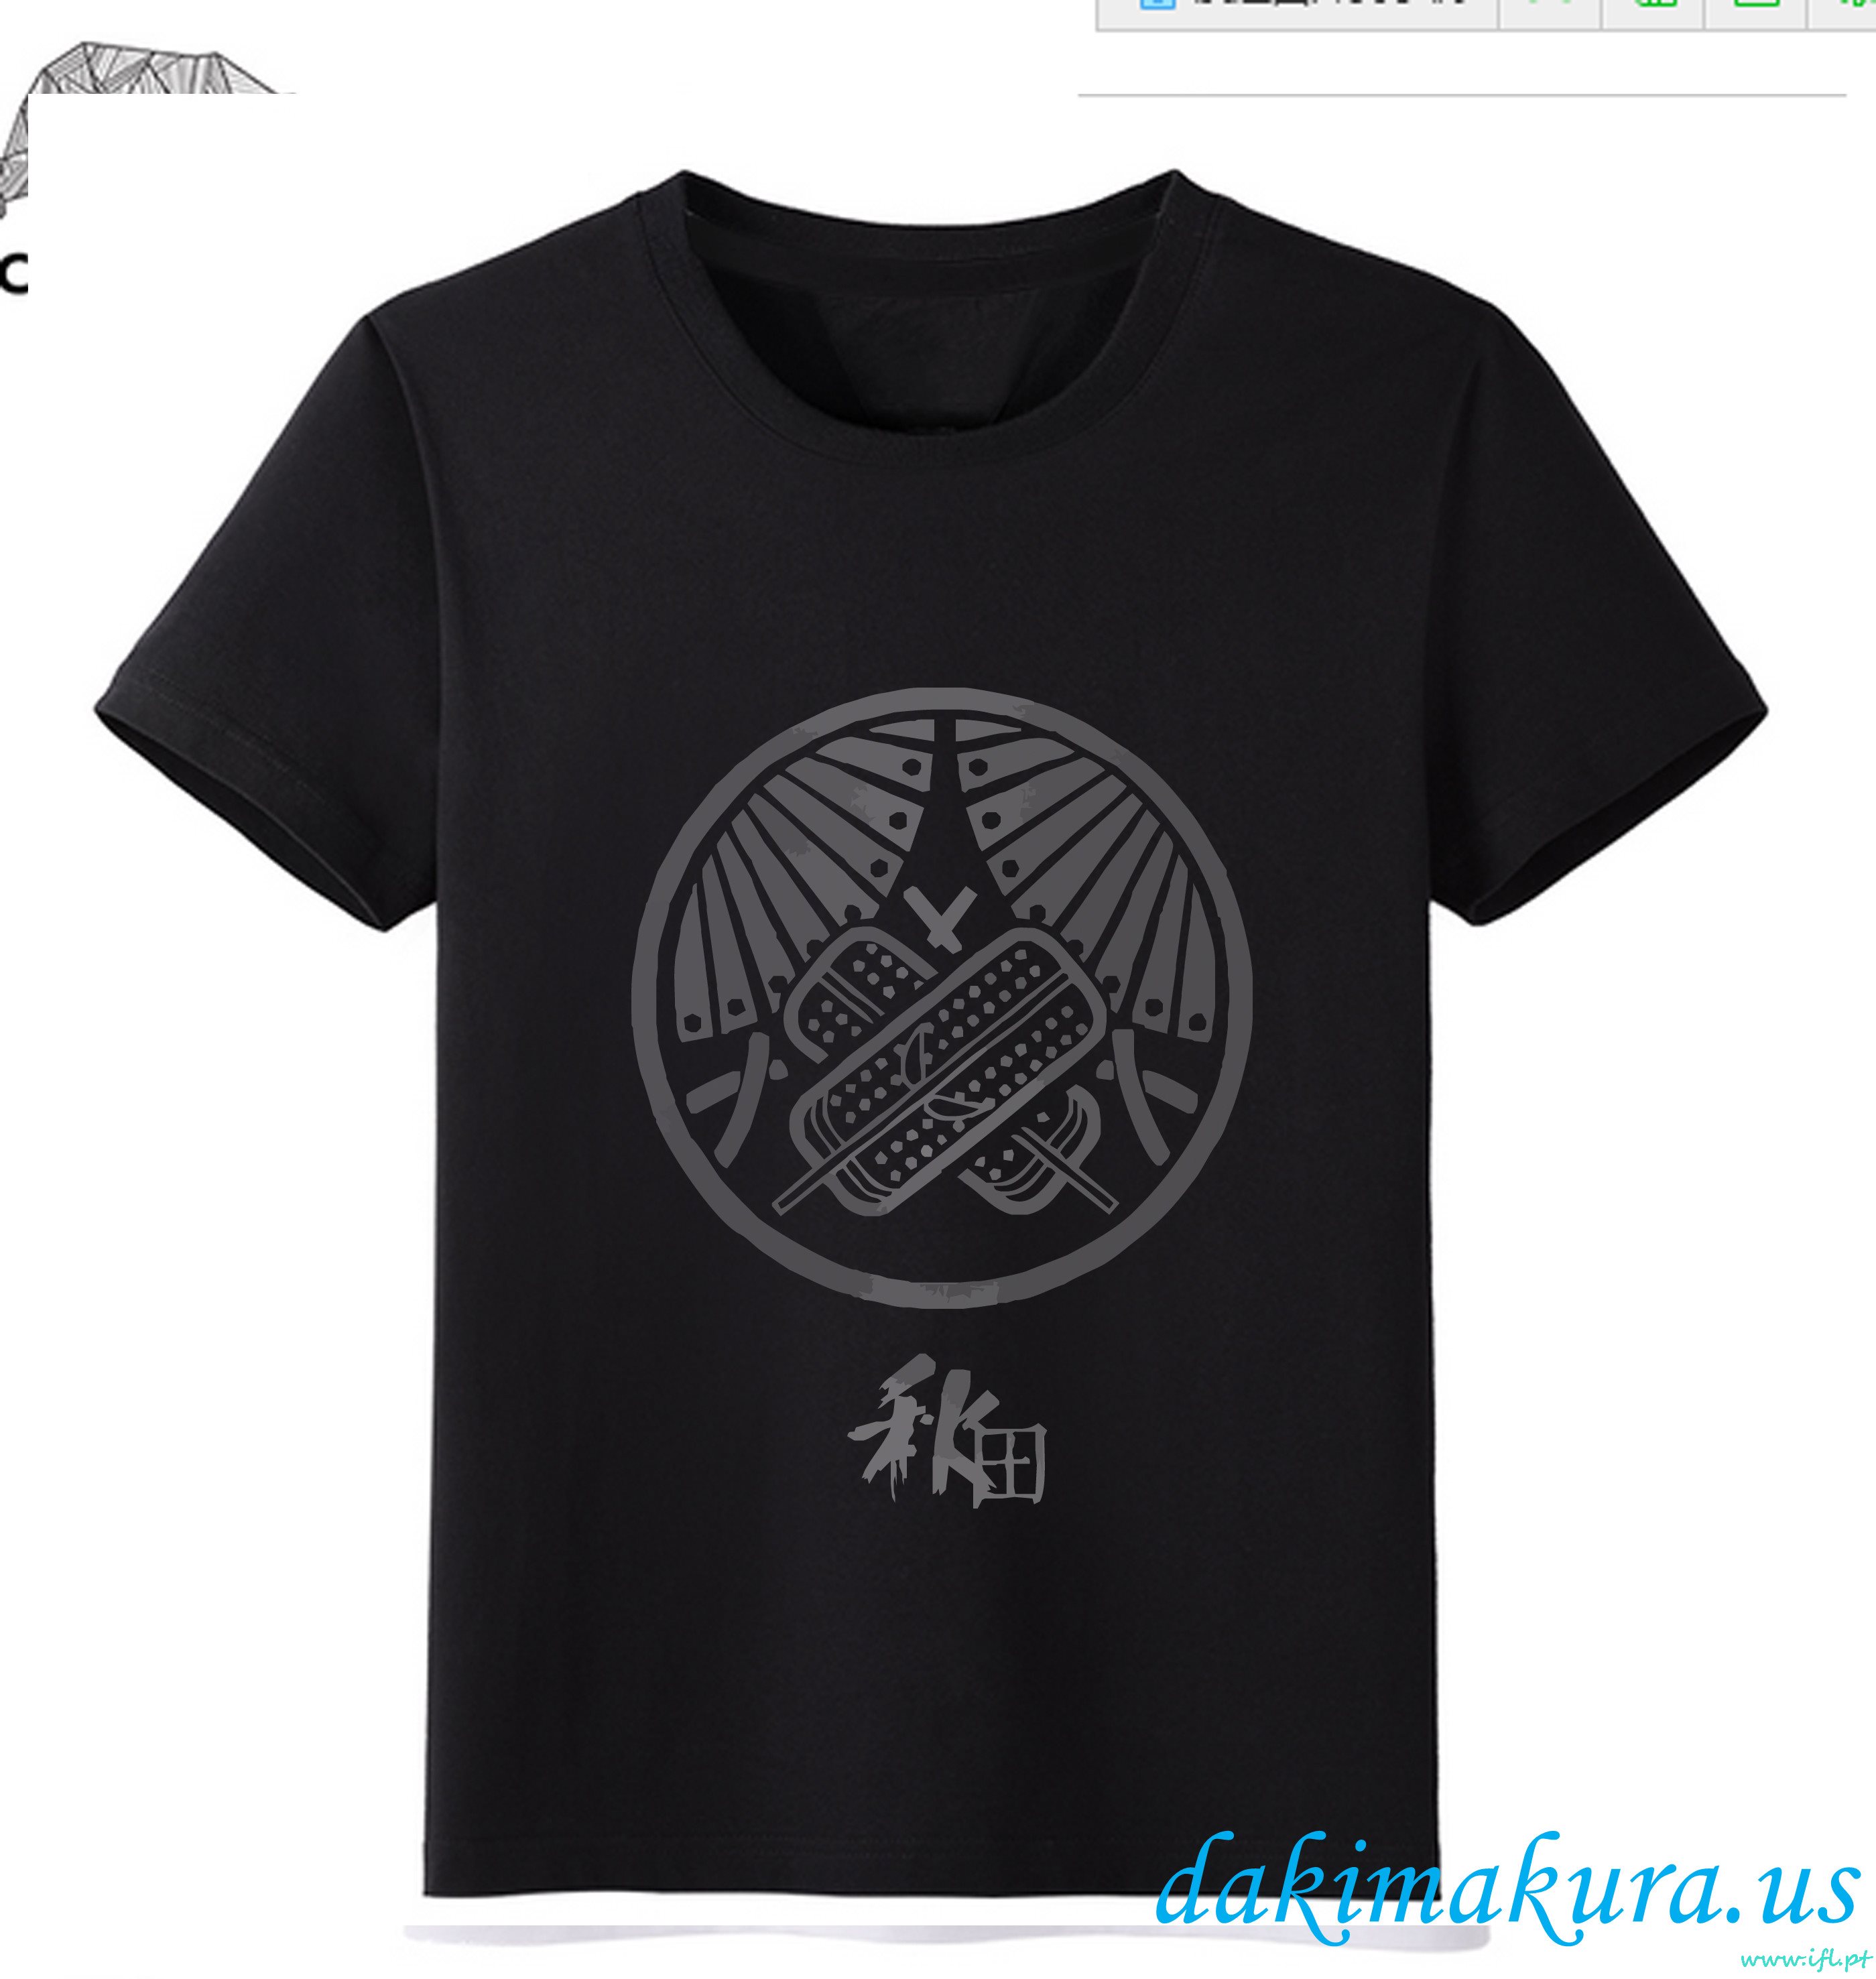 дешевый черный - Touken Ranbu онлайн мужчина аниме мода футболки от фарфоровой фабрики